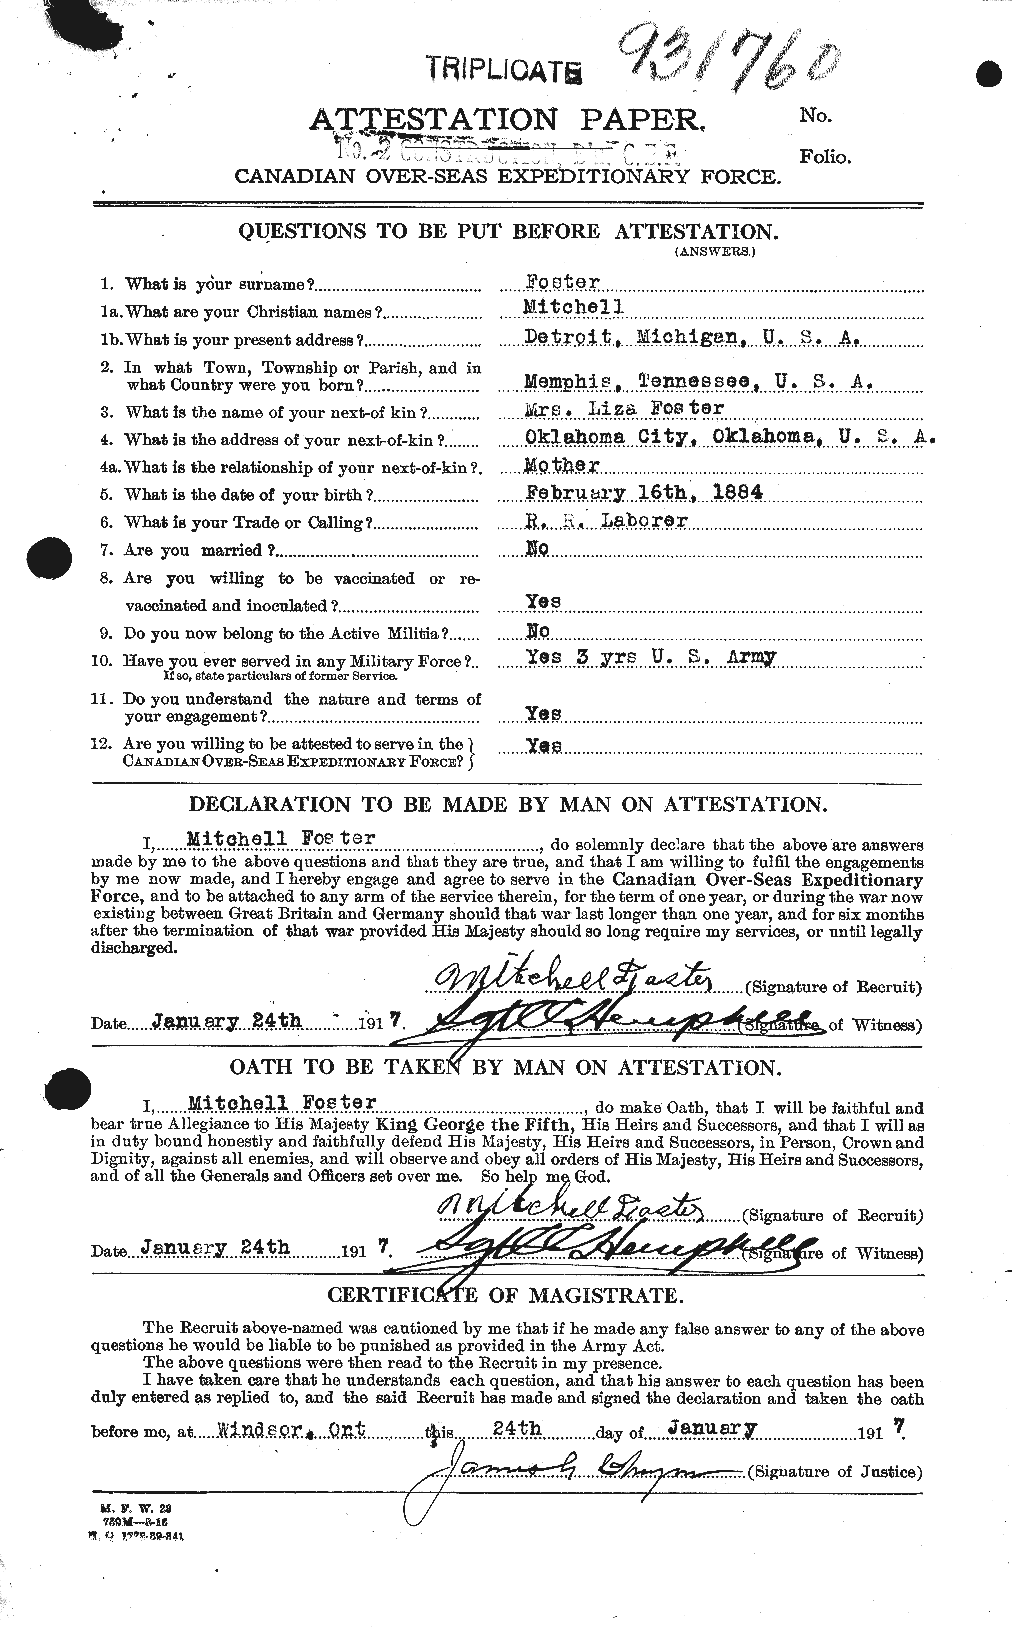 Dossiers du Personnel de la Première Guerre mondiale - CEC 333429a